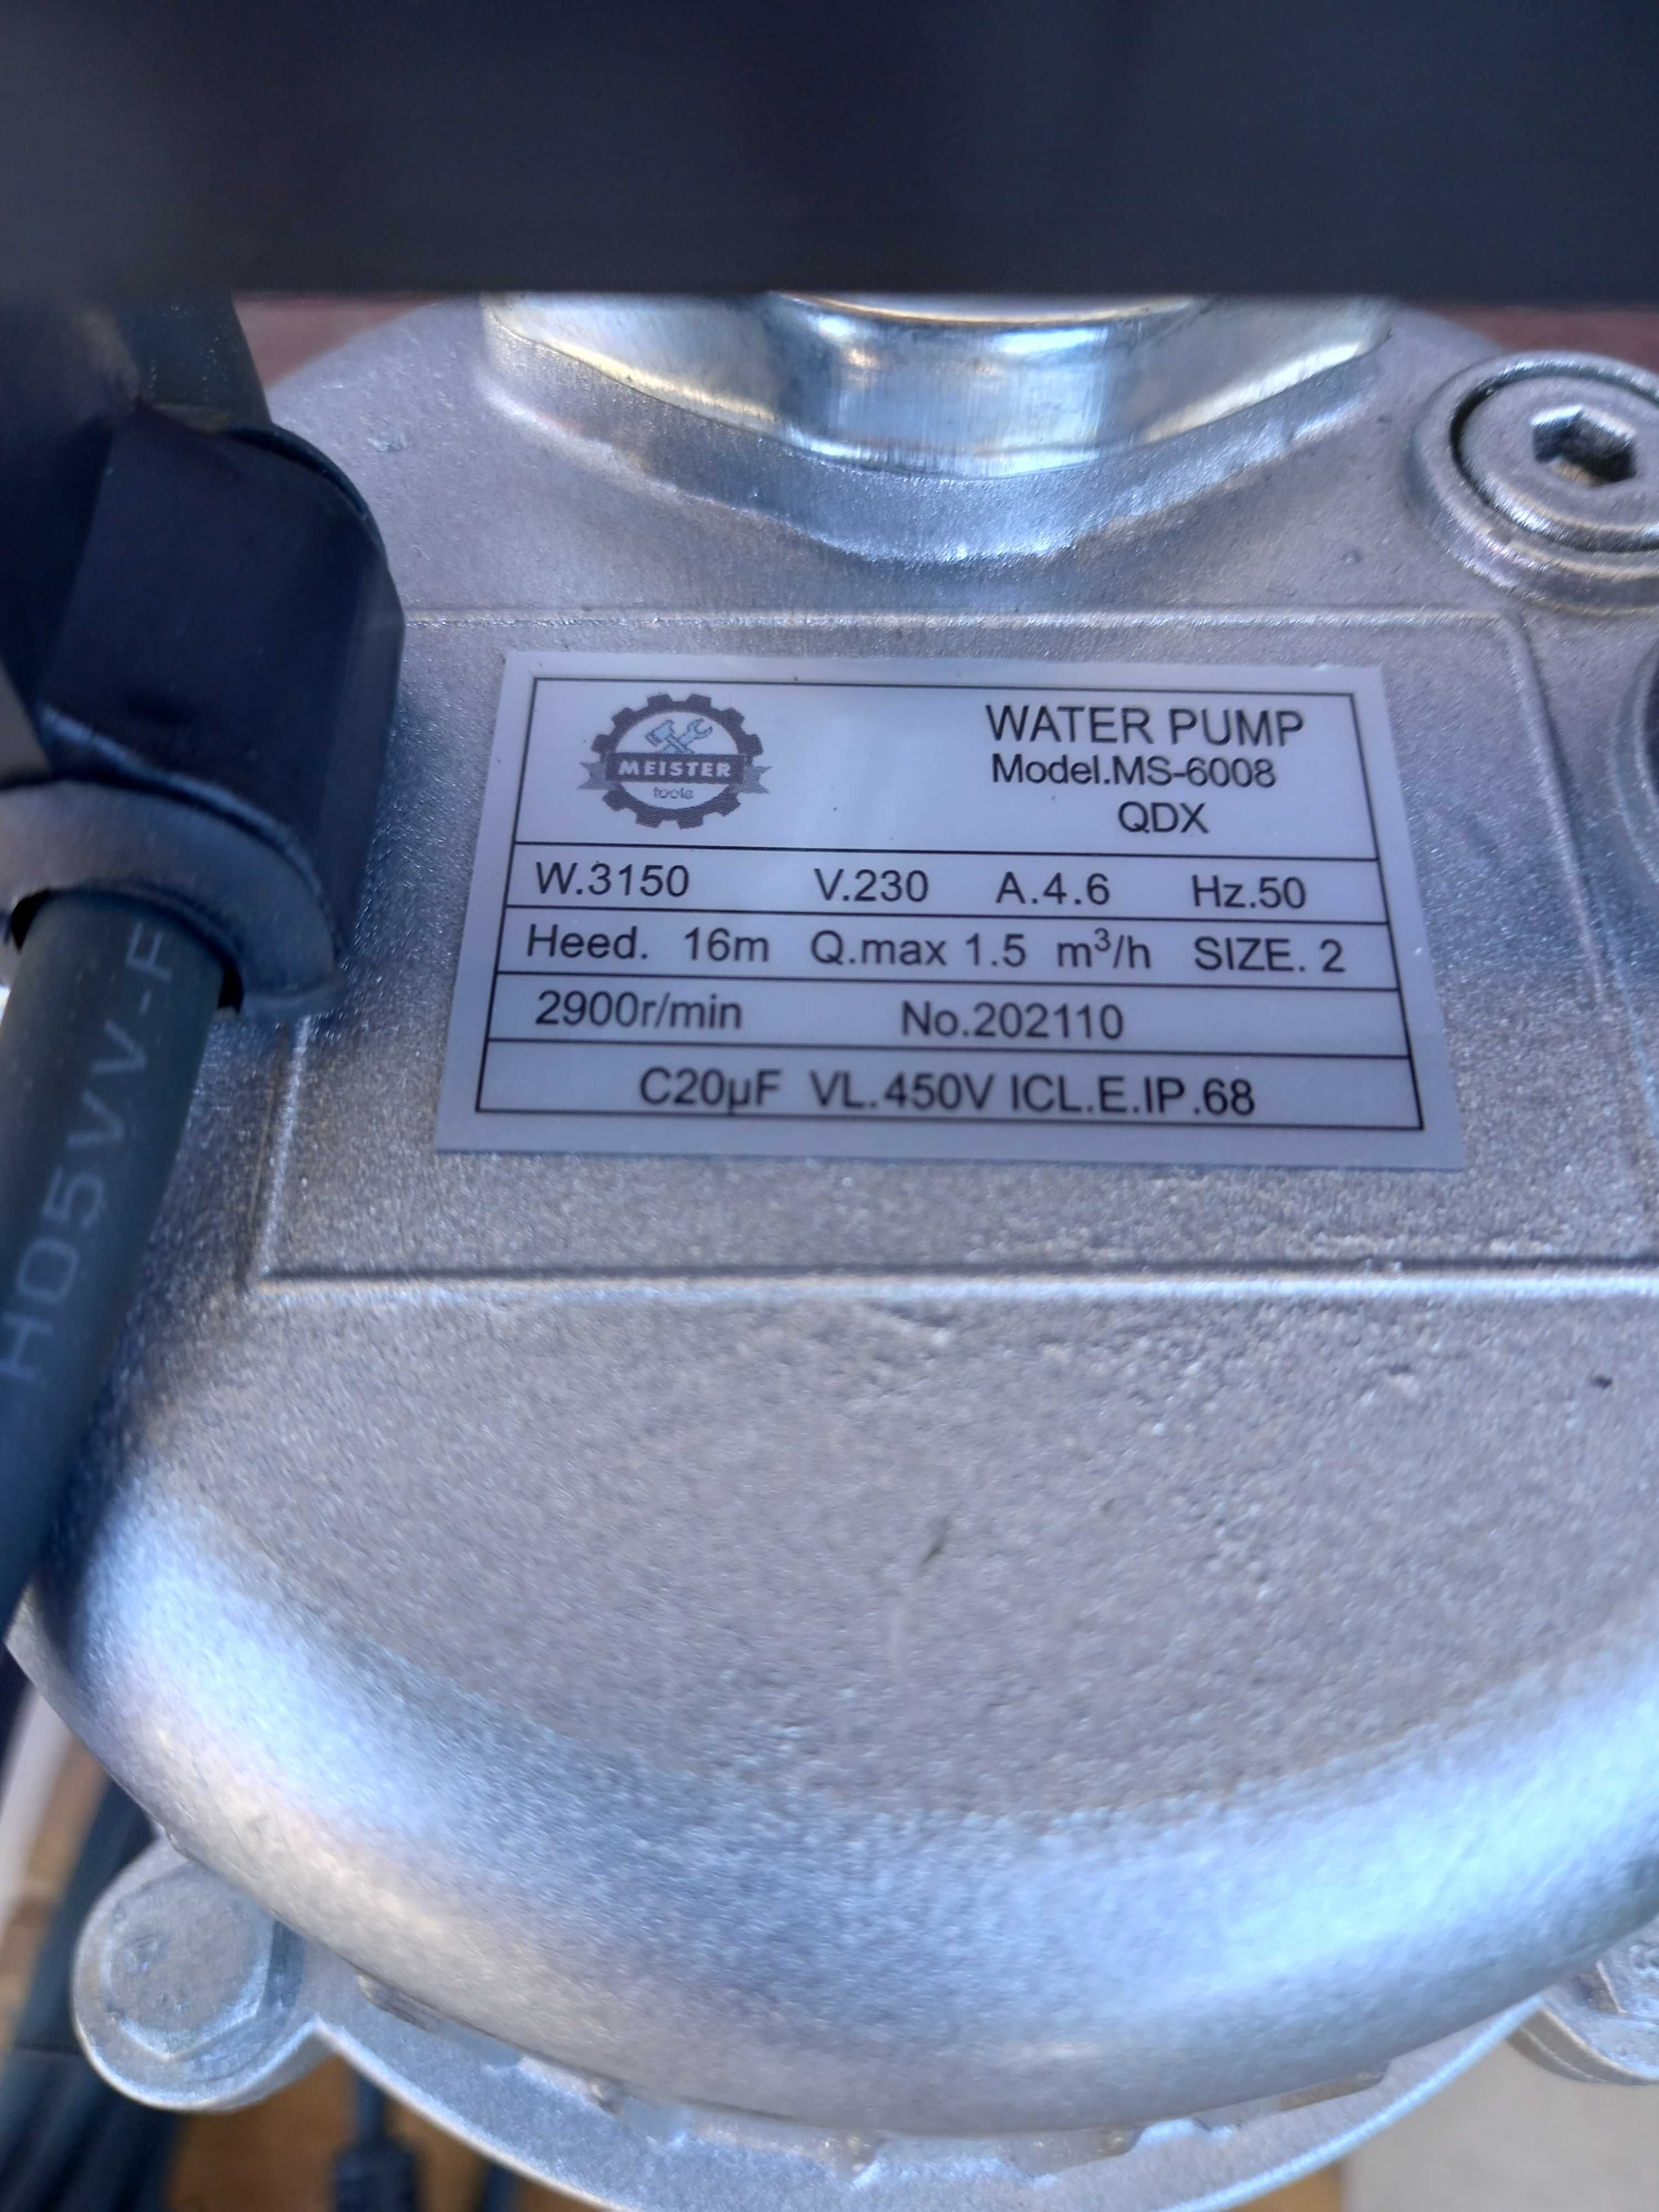 Pompa do brudnej i czystej wody z sitkiem 3150 W, Model - MS 6008